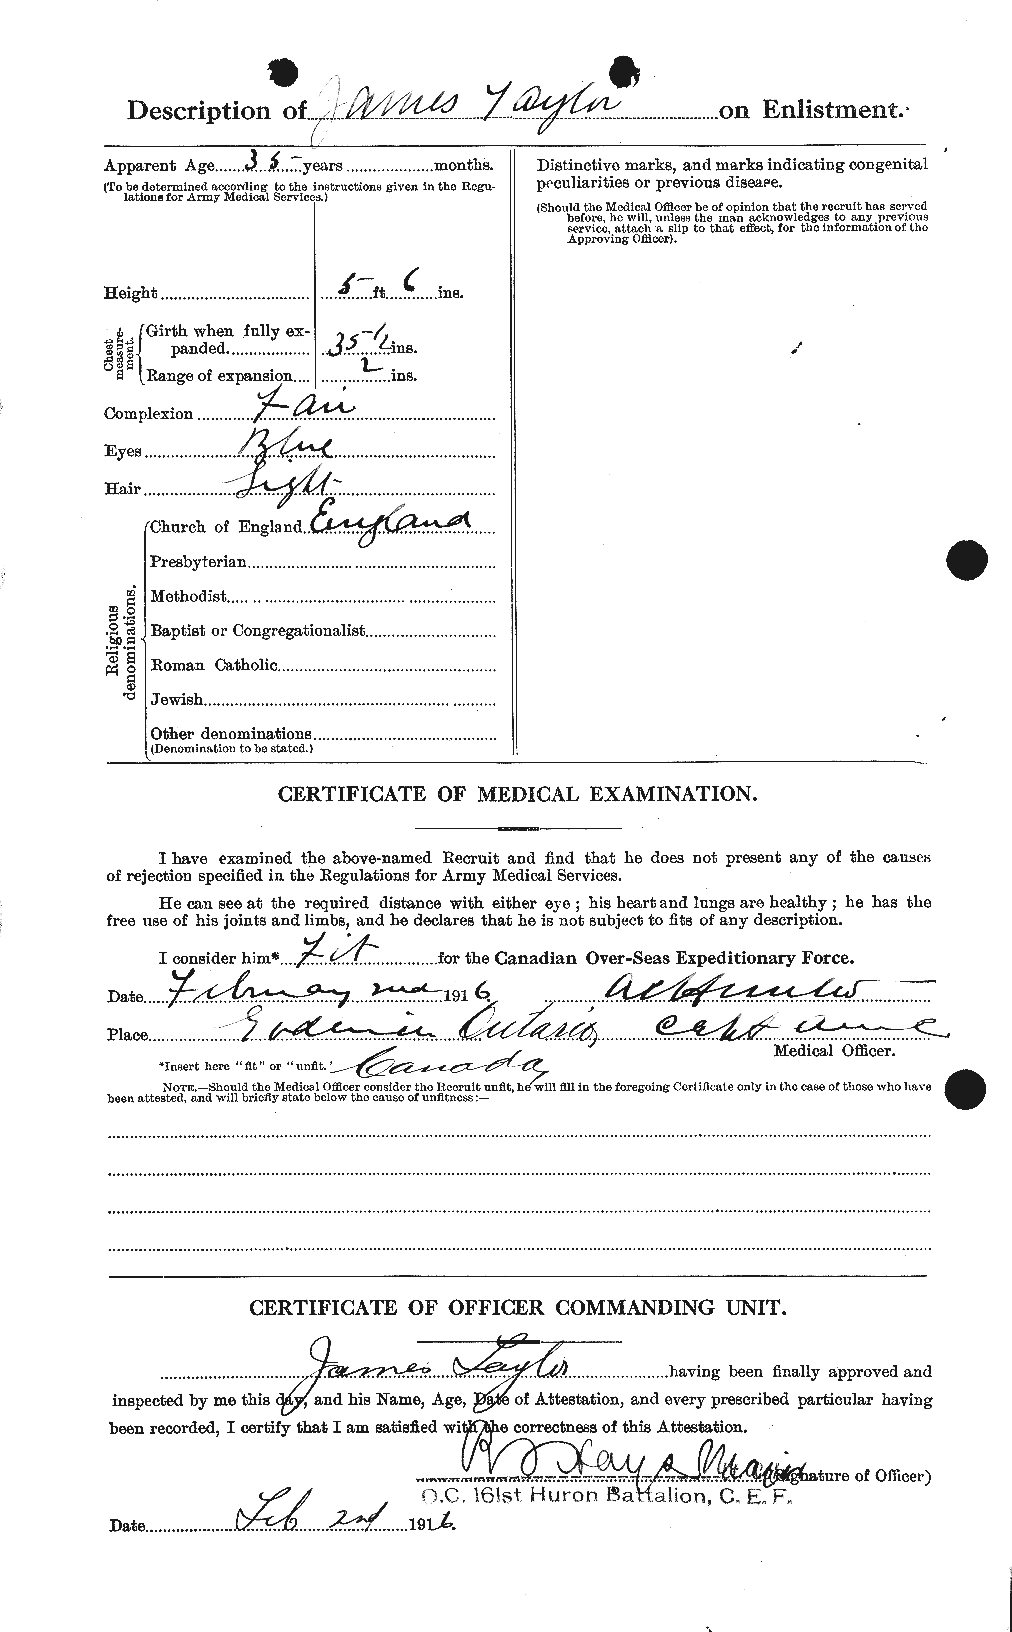 Dossiers du Personnel de la Première Guerre mondiale - CEC 626650b